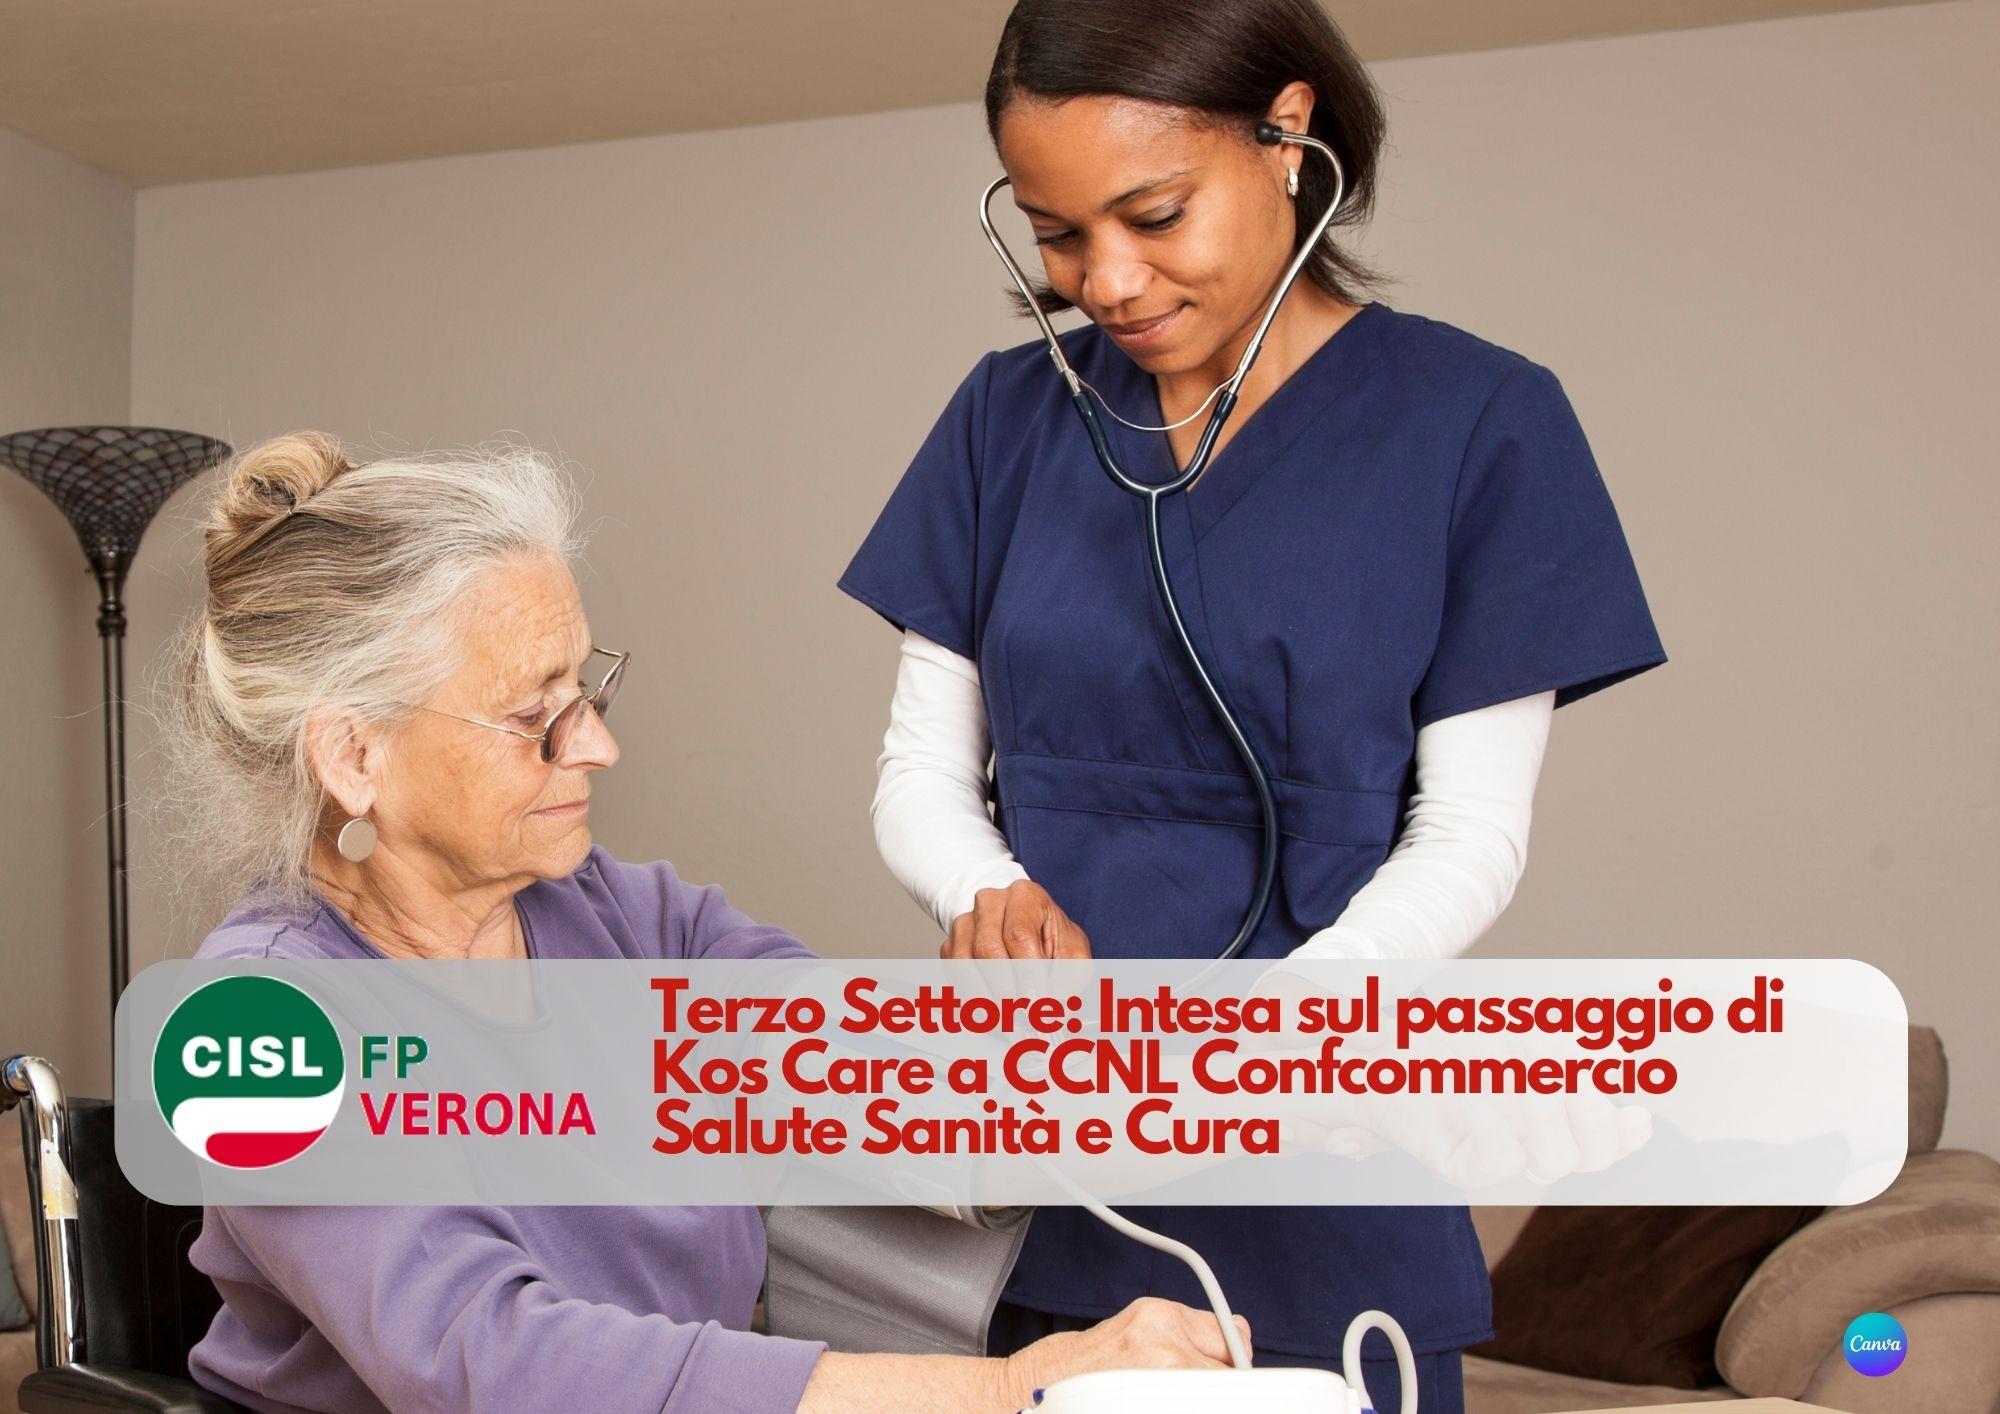 CISL FP Verona. Terzo Settore: Intesa sul passaggio di Kos Care a CCNL Confcommercio Salute Sanità e Cura